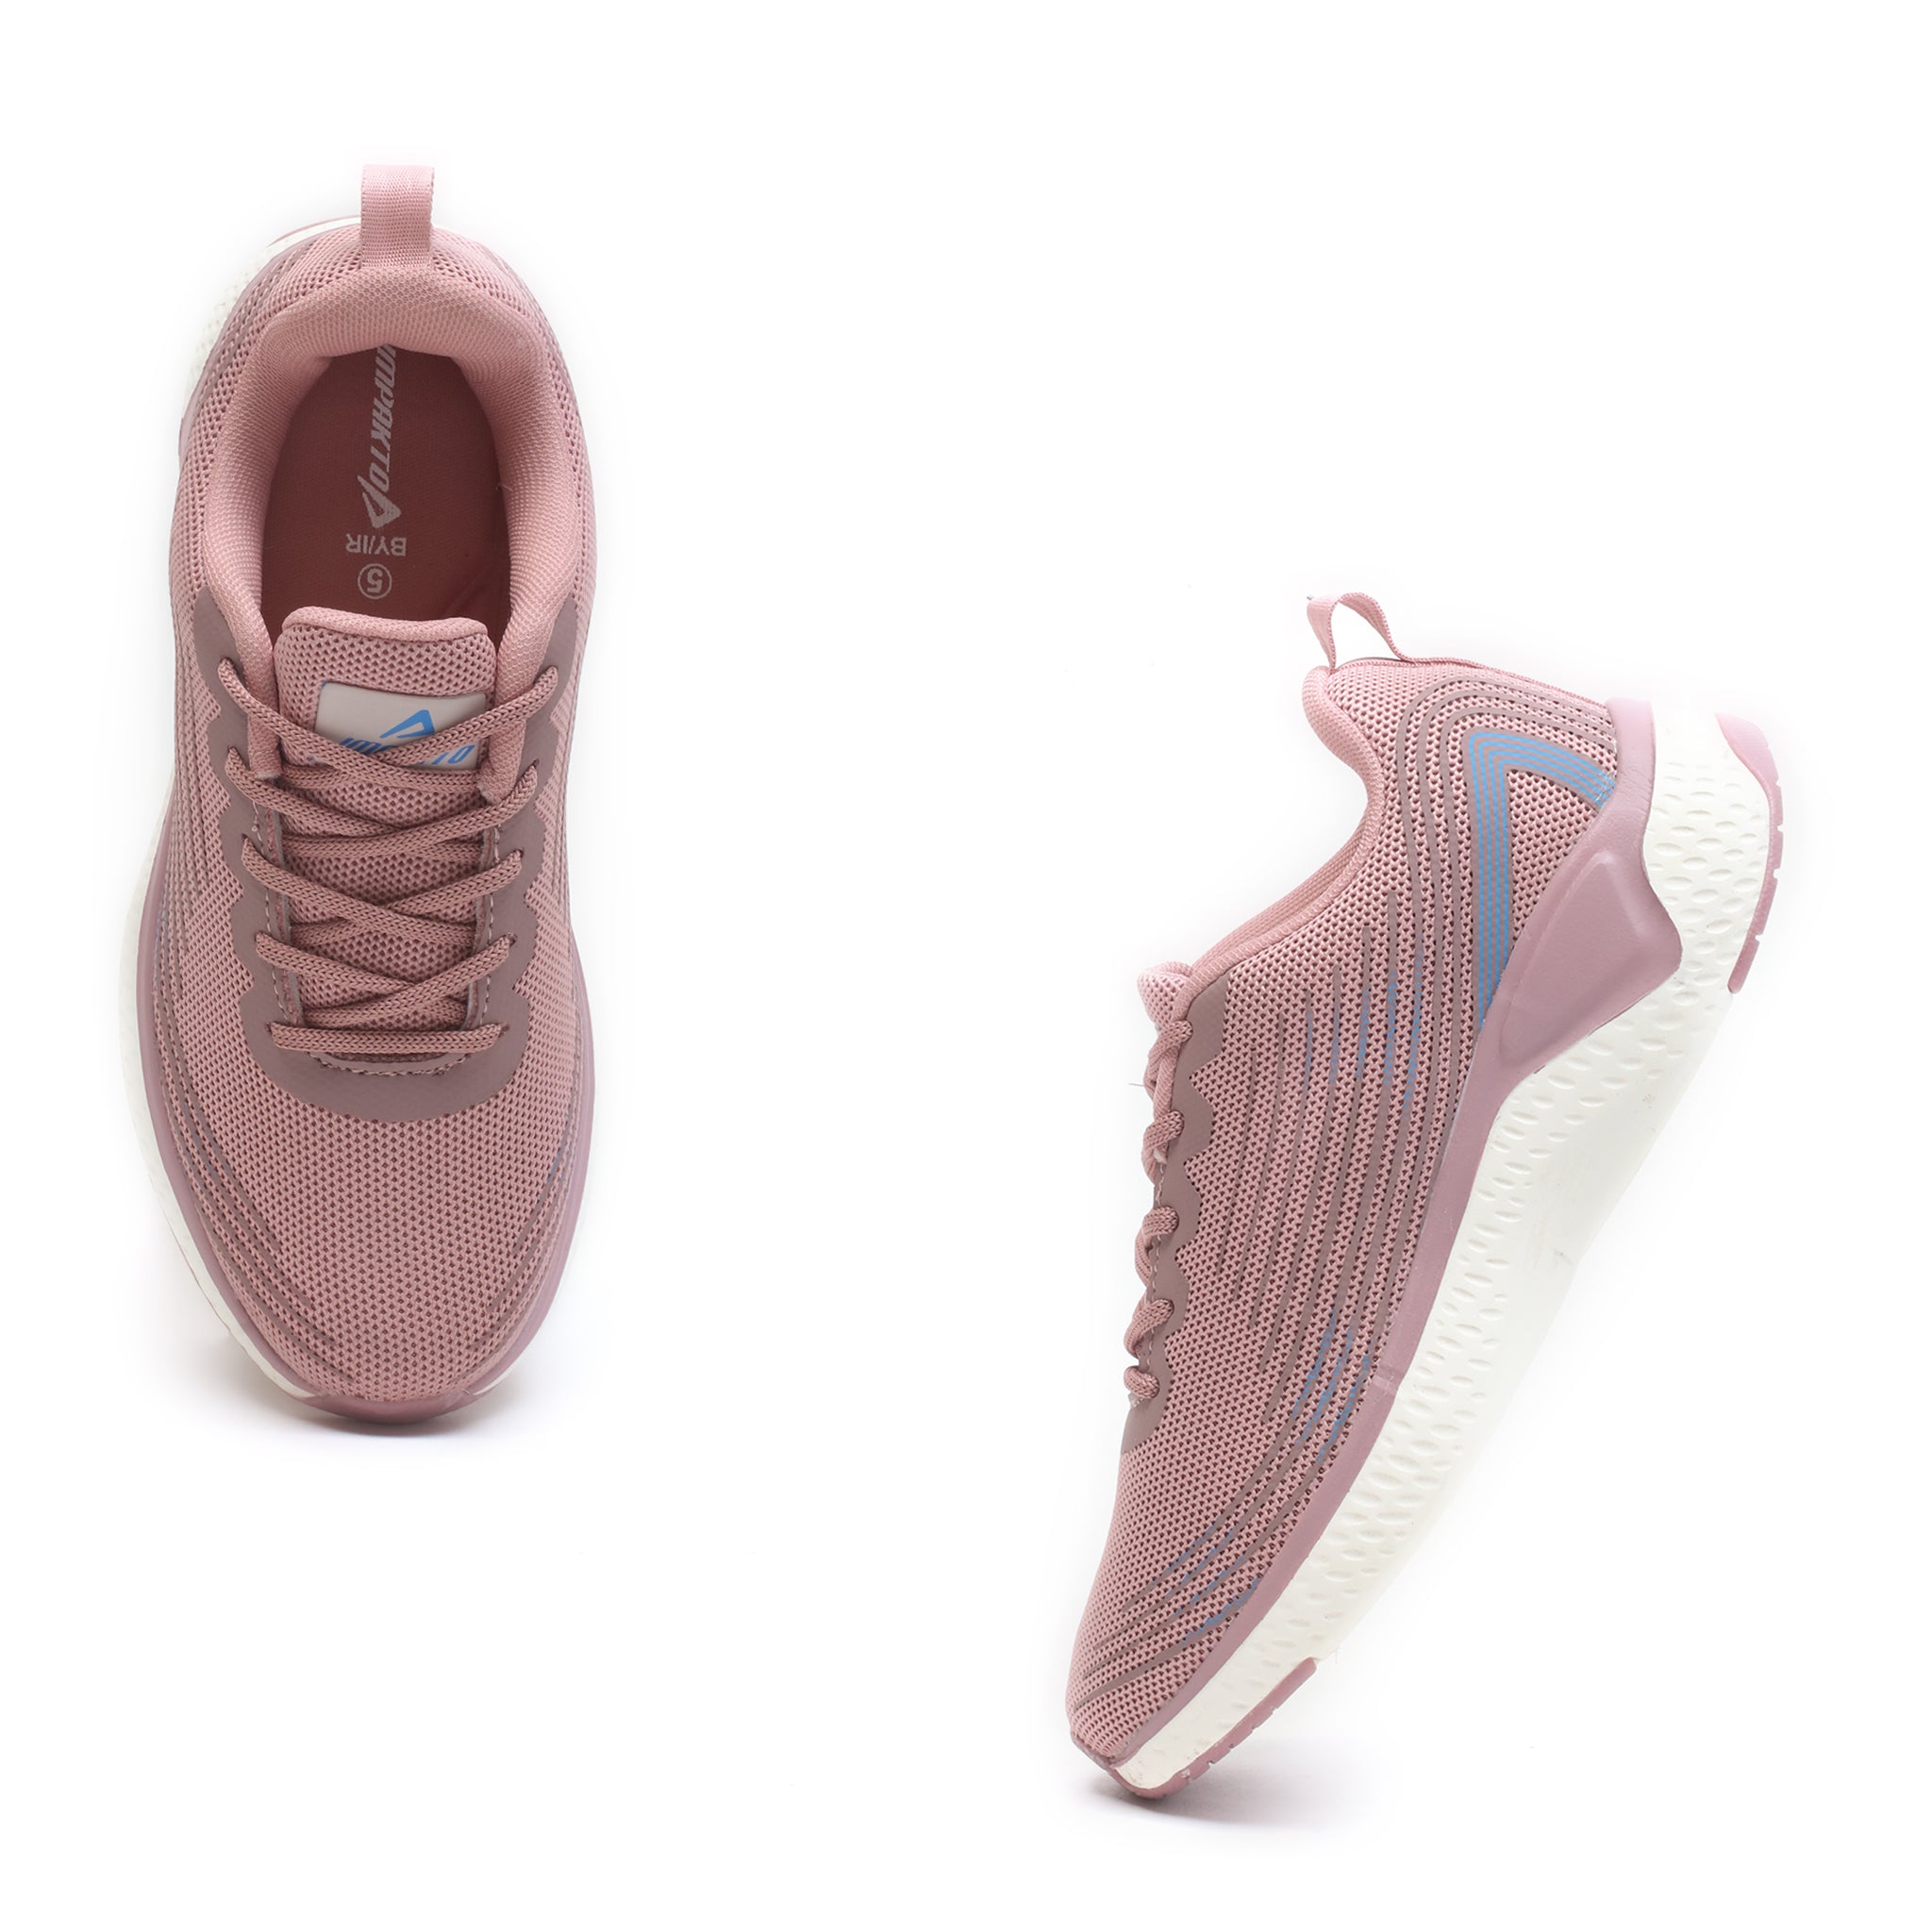 Impakto Women's Pink Running Shoes